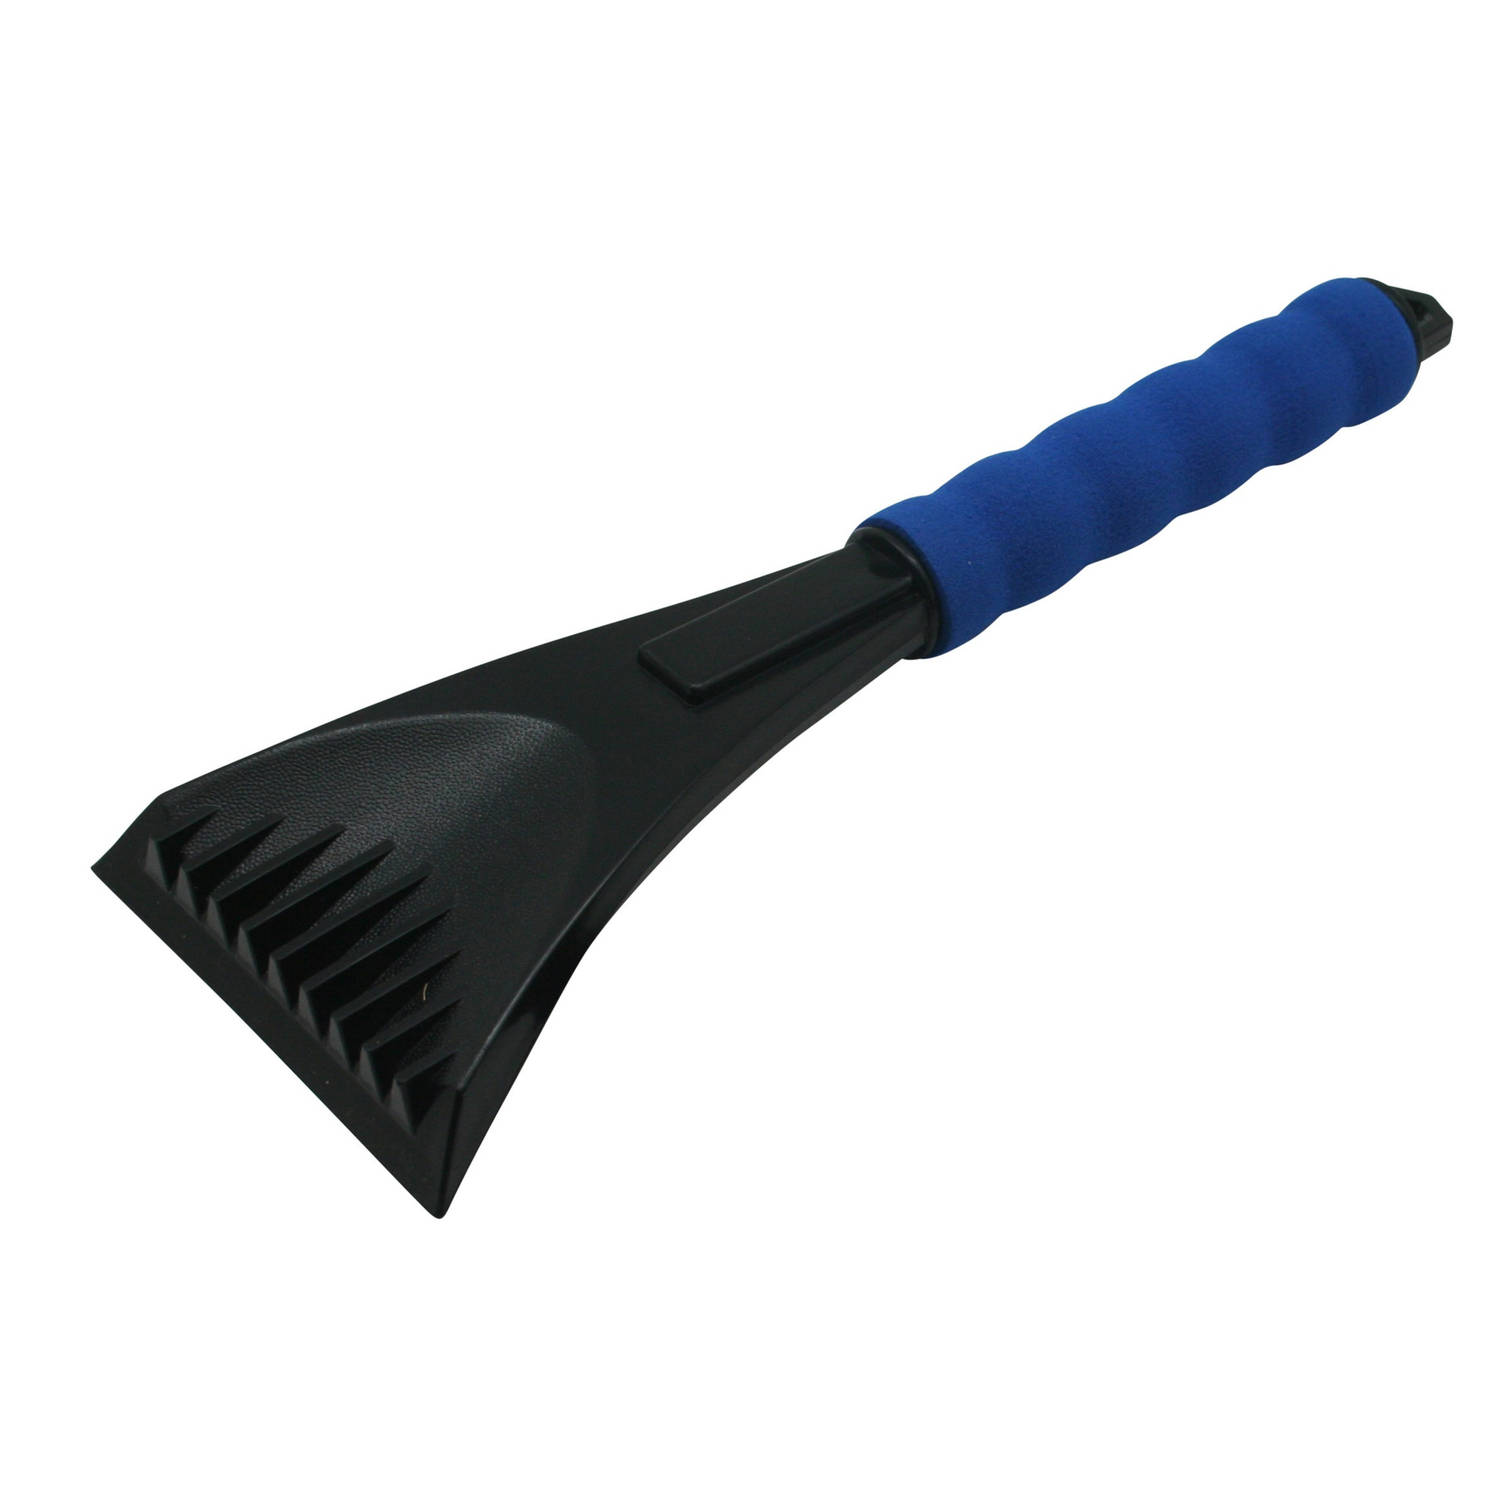 Kunststof Ijskrabber Zwart-blauw Met Softgrip Handvat 28 Cm Ijskrabbers